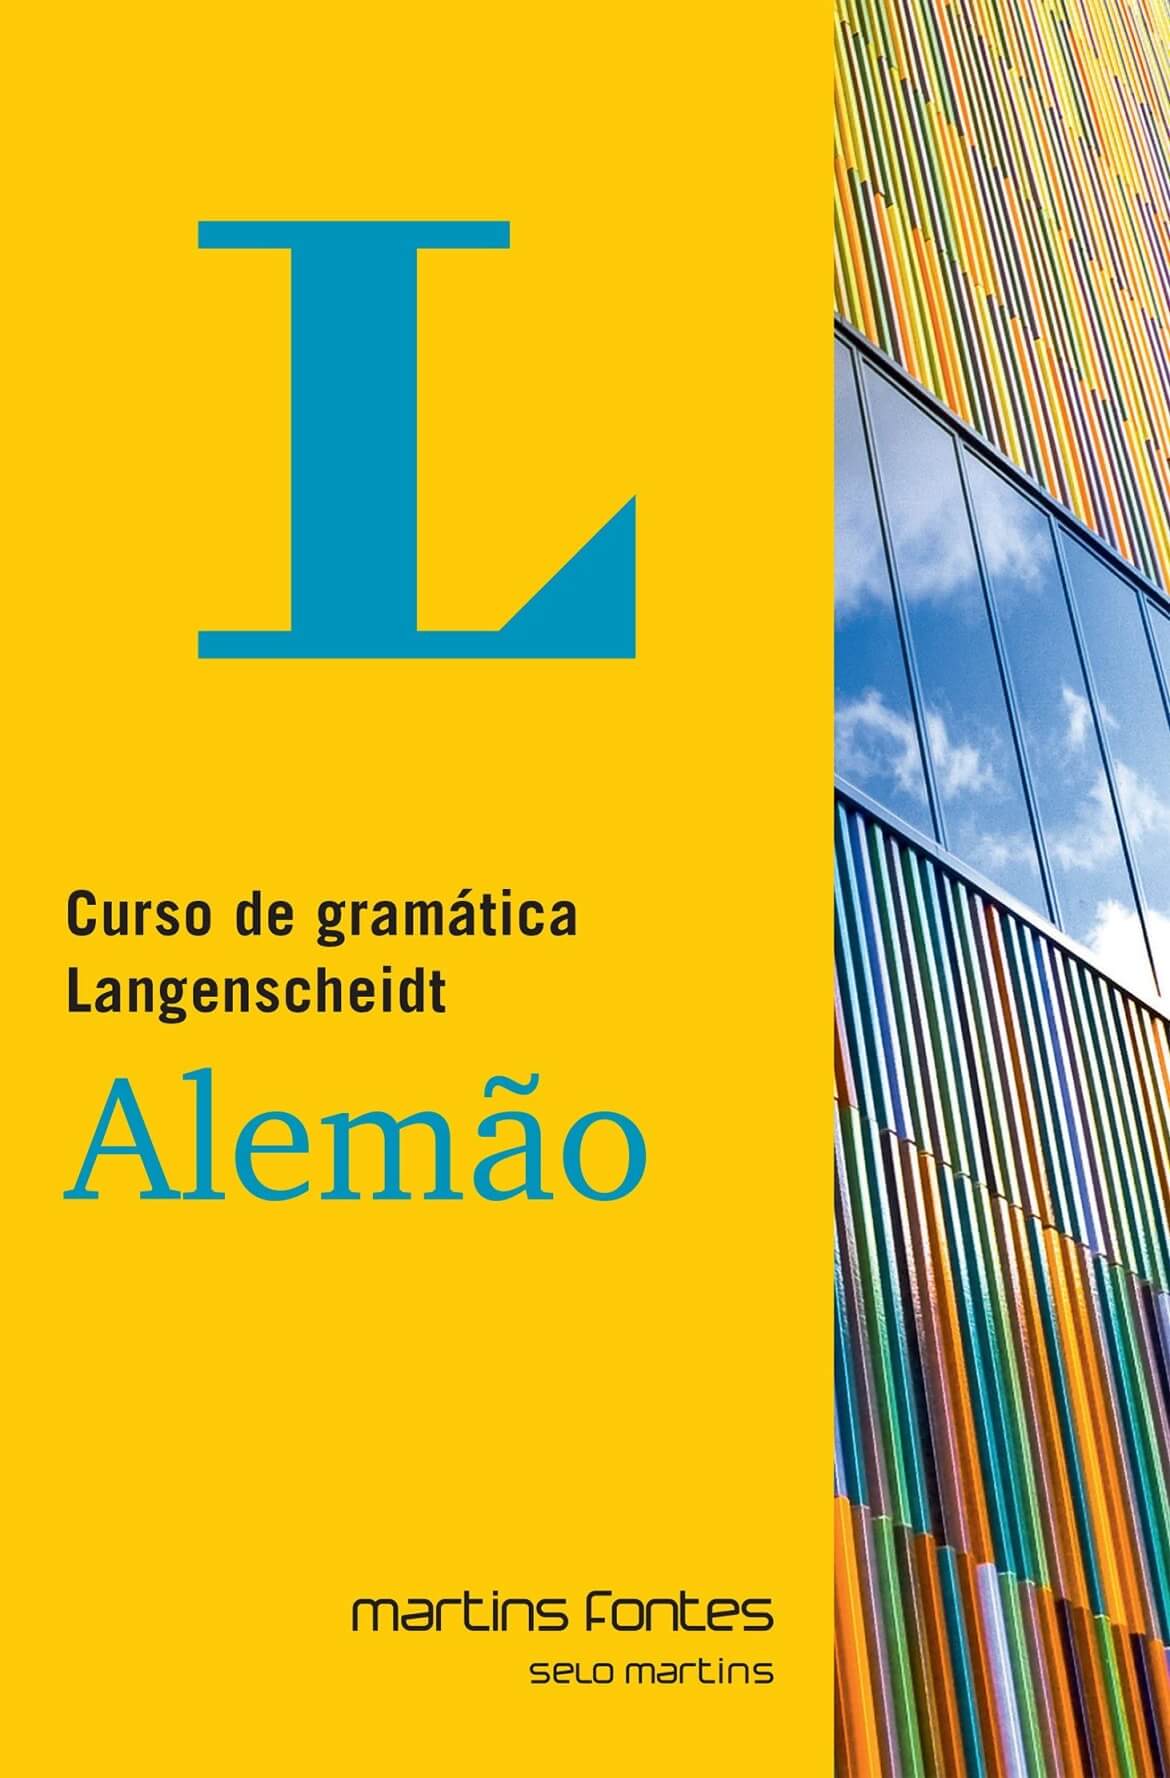 Curso de gramática Langenscheidt Alemão  - Martins Fontes